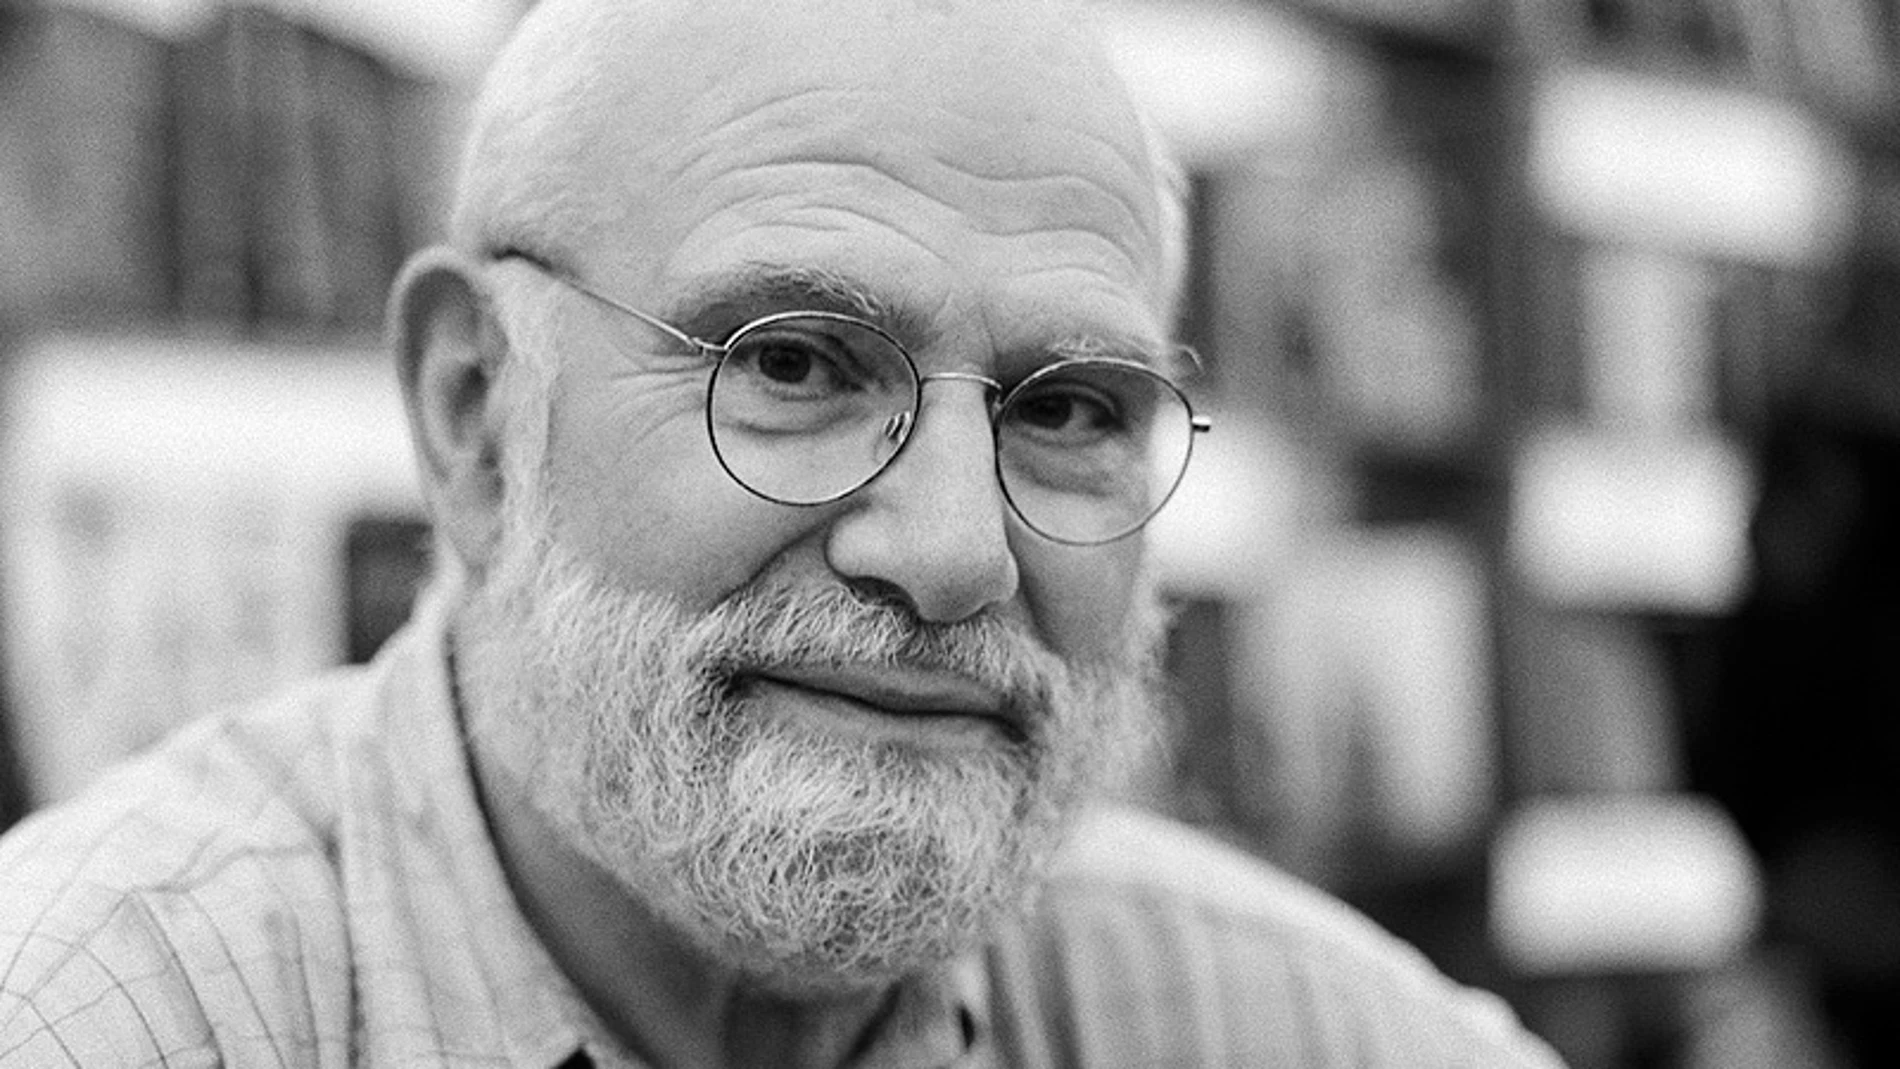 El Hombre Que Confundió A Su Mujer Con Un Sombrero, Ljudbok, Oliver Sacks